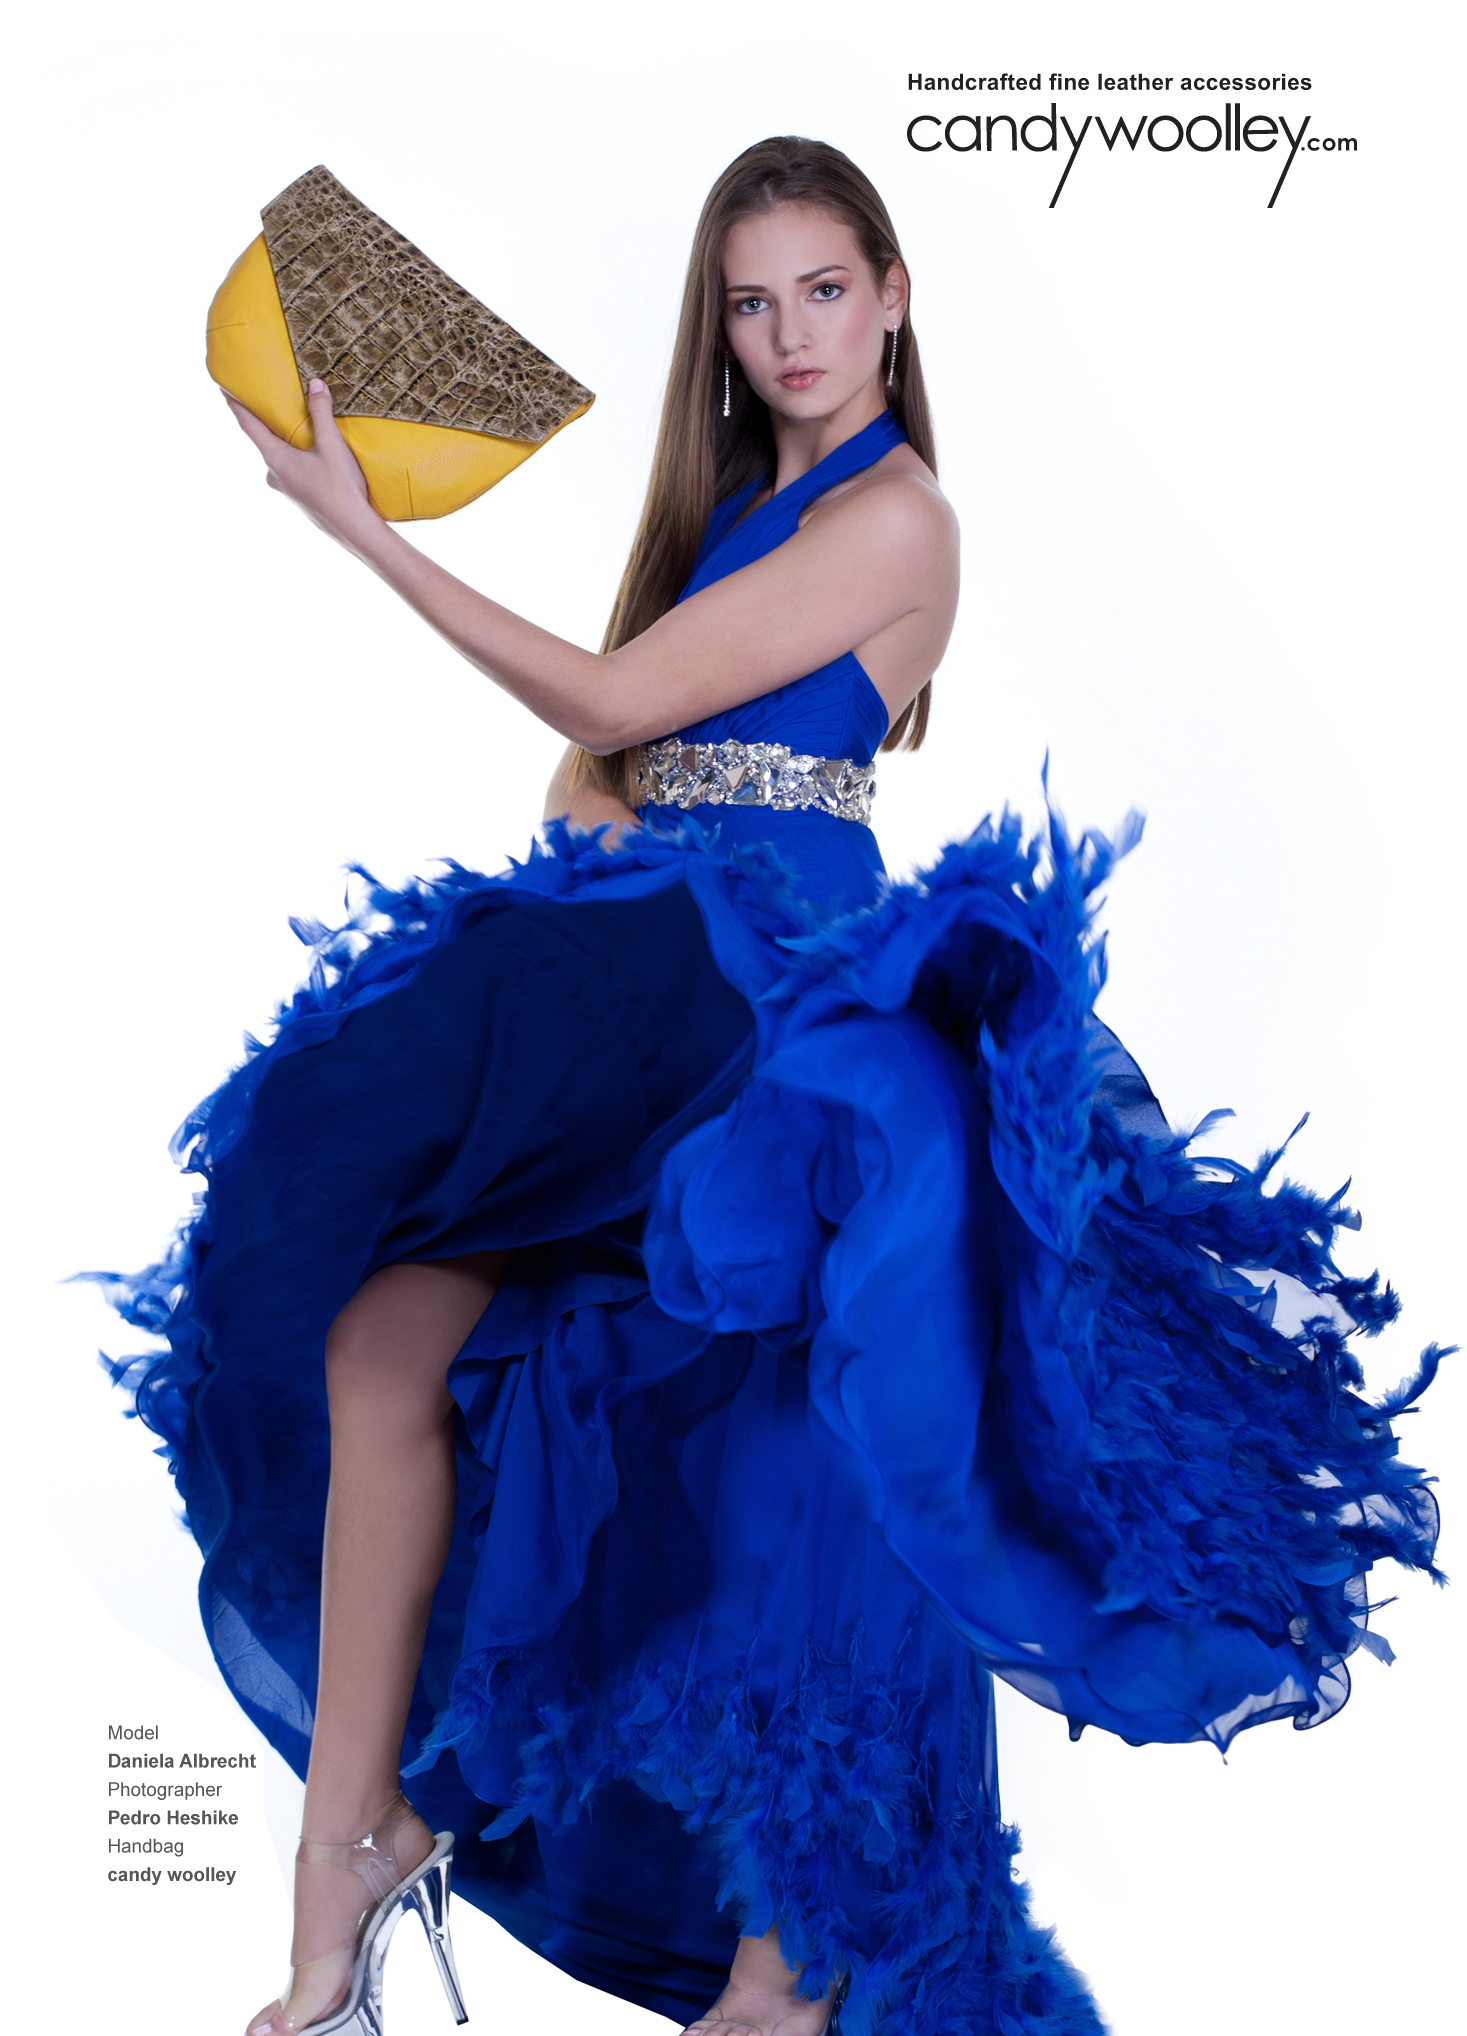 Daniela Albrecht modeling a mustard yellow Candy Woolley clutch